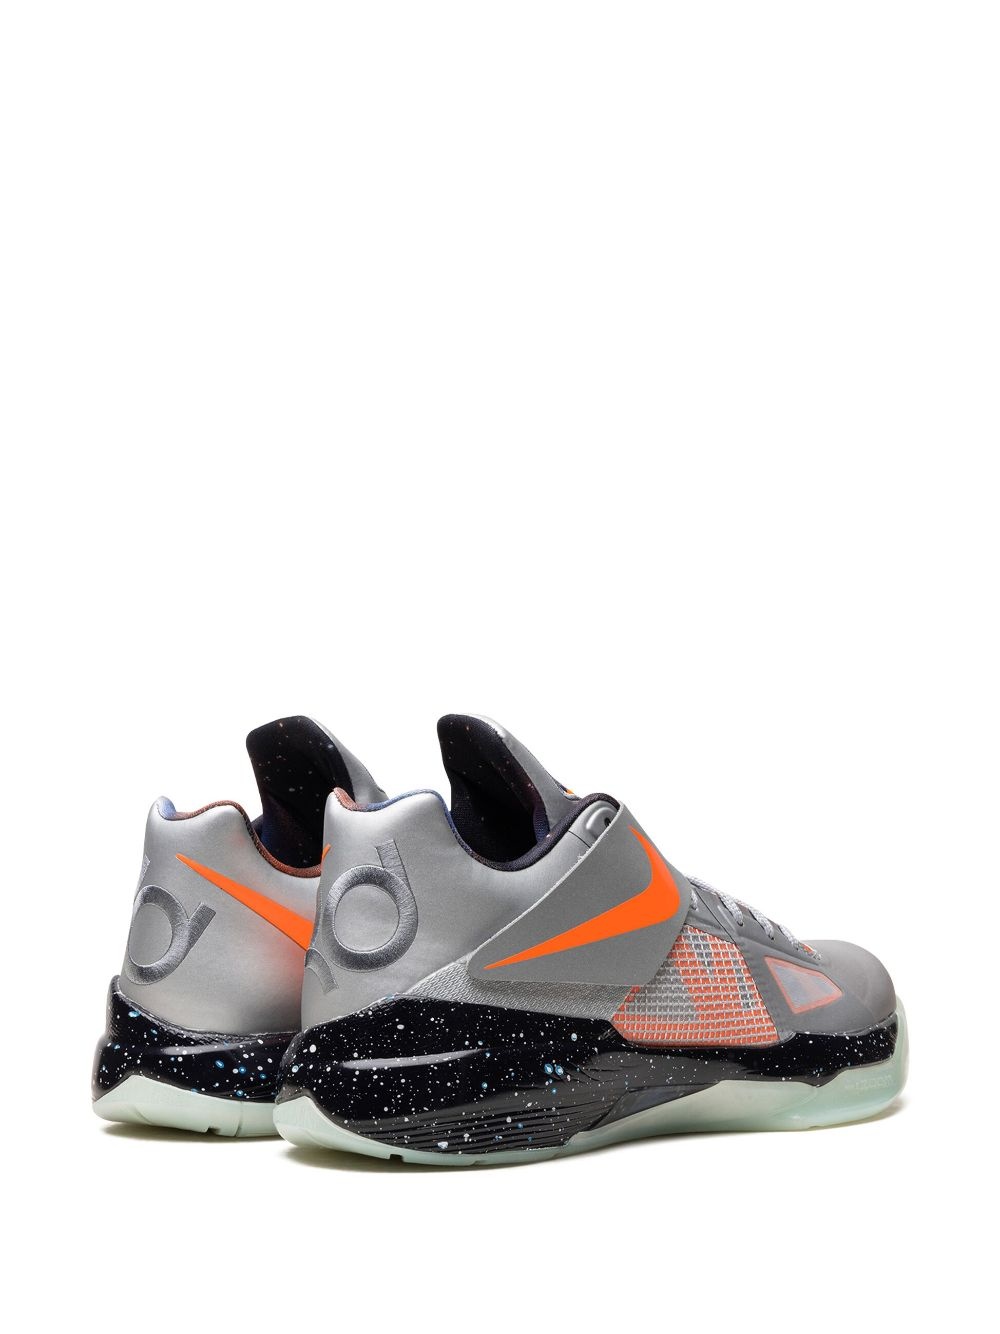 KD 4 "Galaxy" sneakers - 3